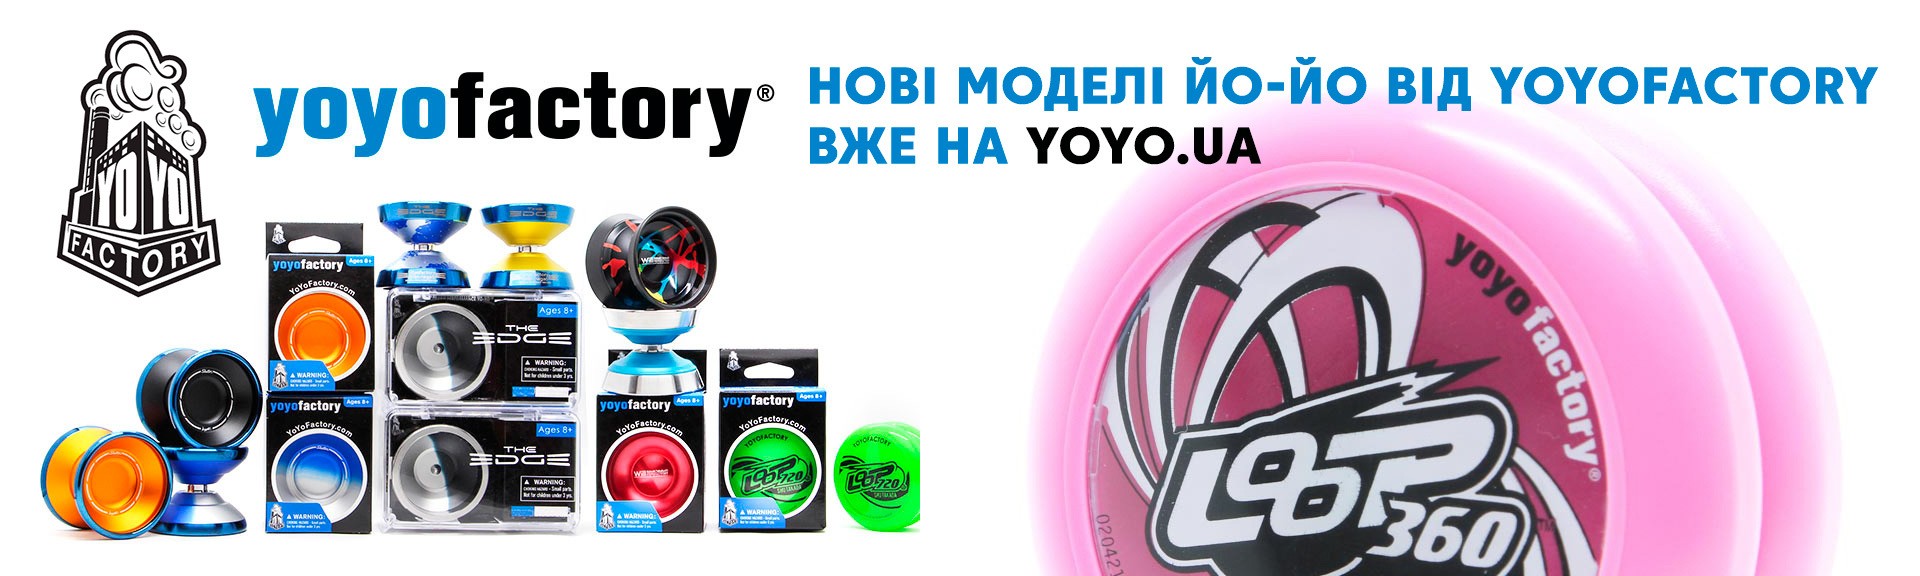 Yoyofactory йо-йо купити в Україні